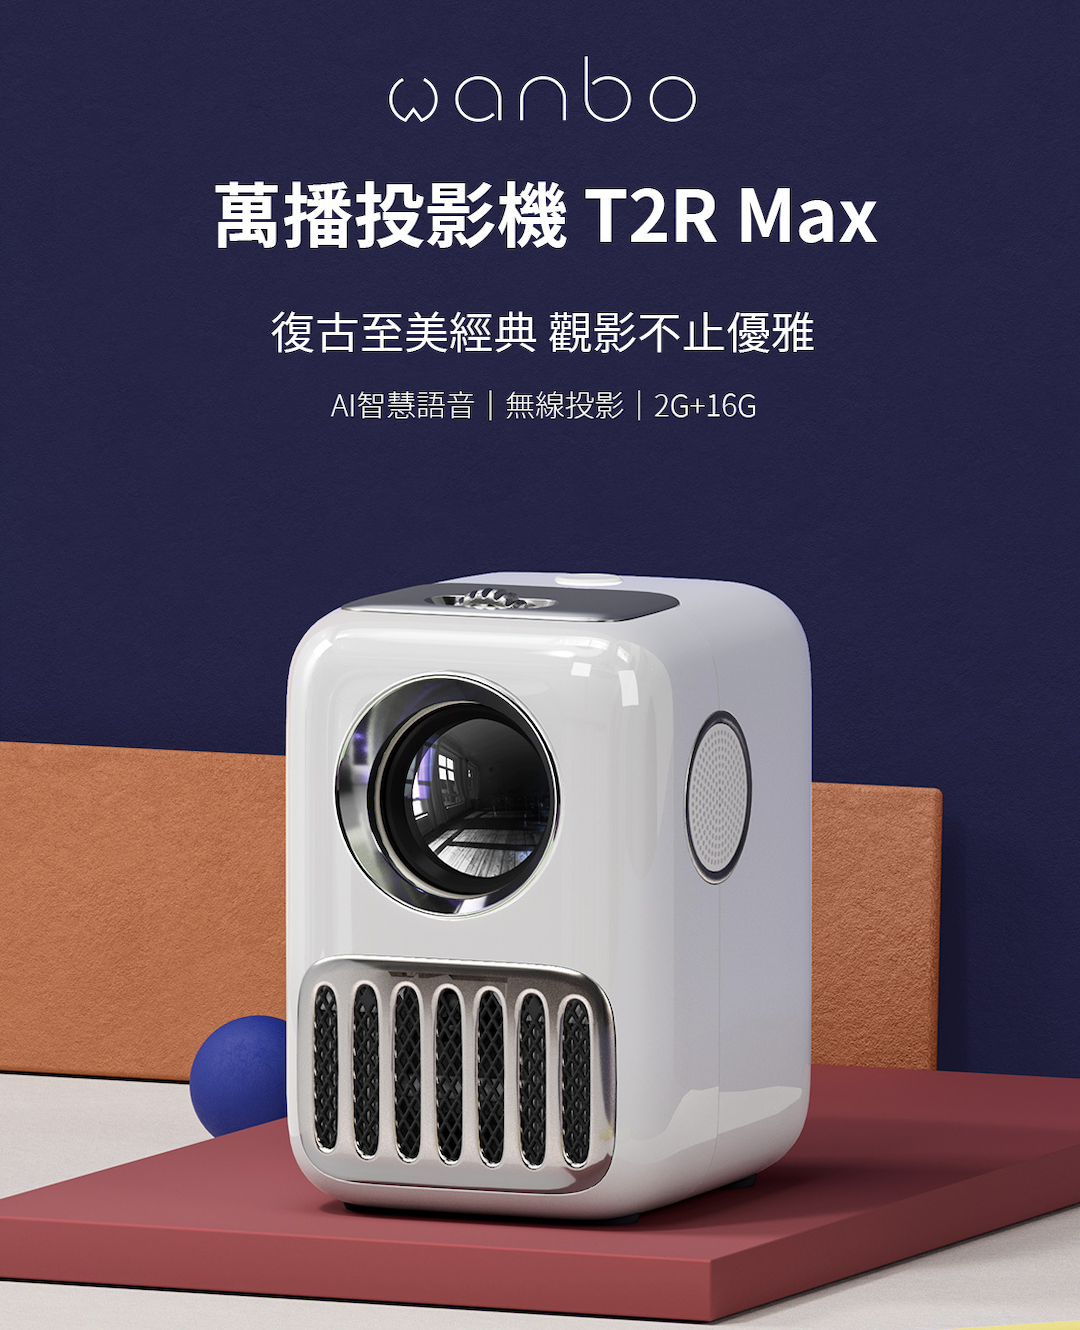 攜帶式微型智慧投影機 1080P原畫體驗 附支架 Wanbo T2R Max 無線投影 AI智慧語音【JoWoJJ】